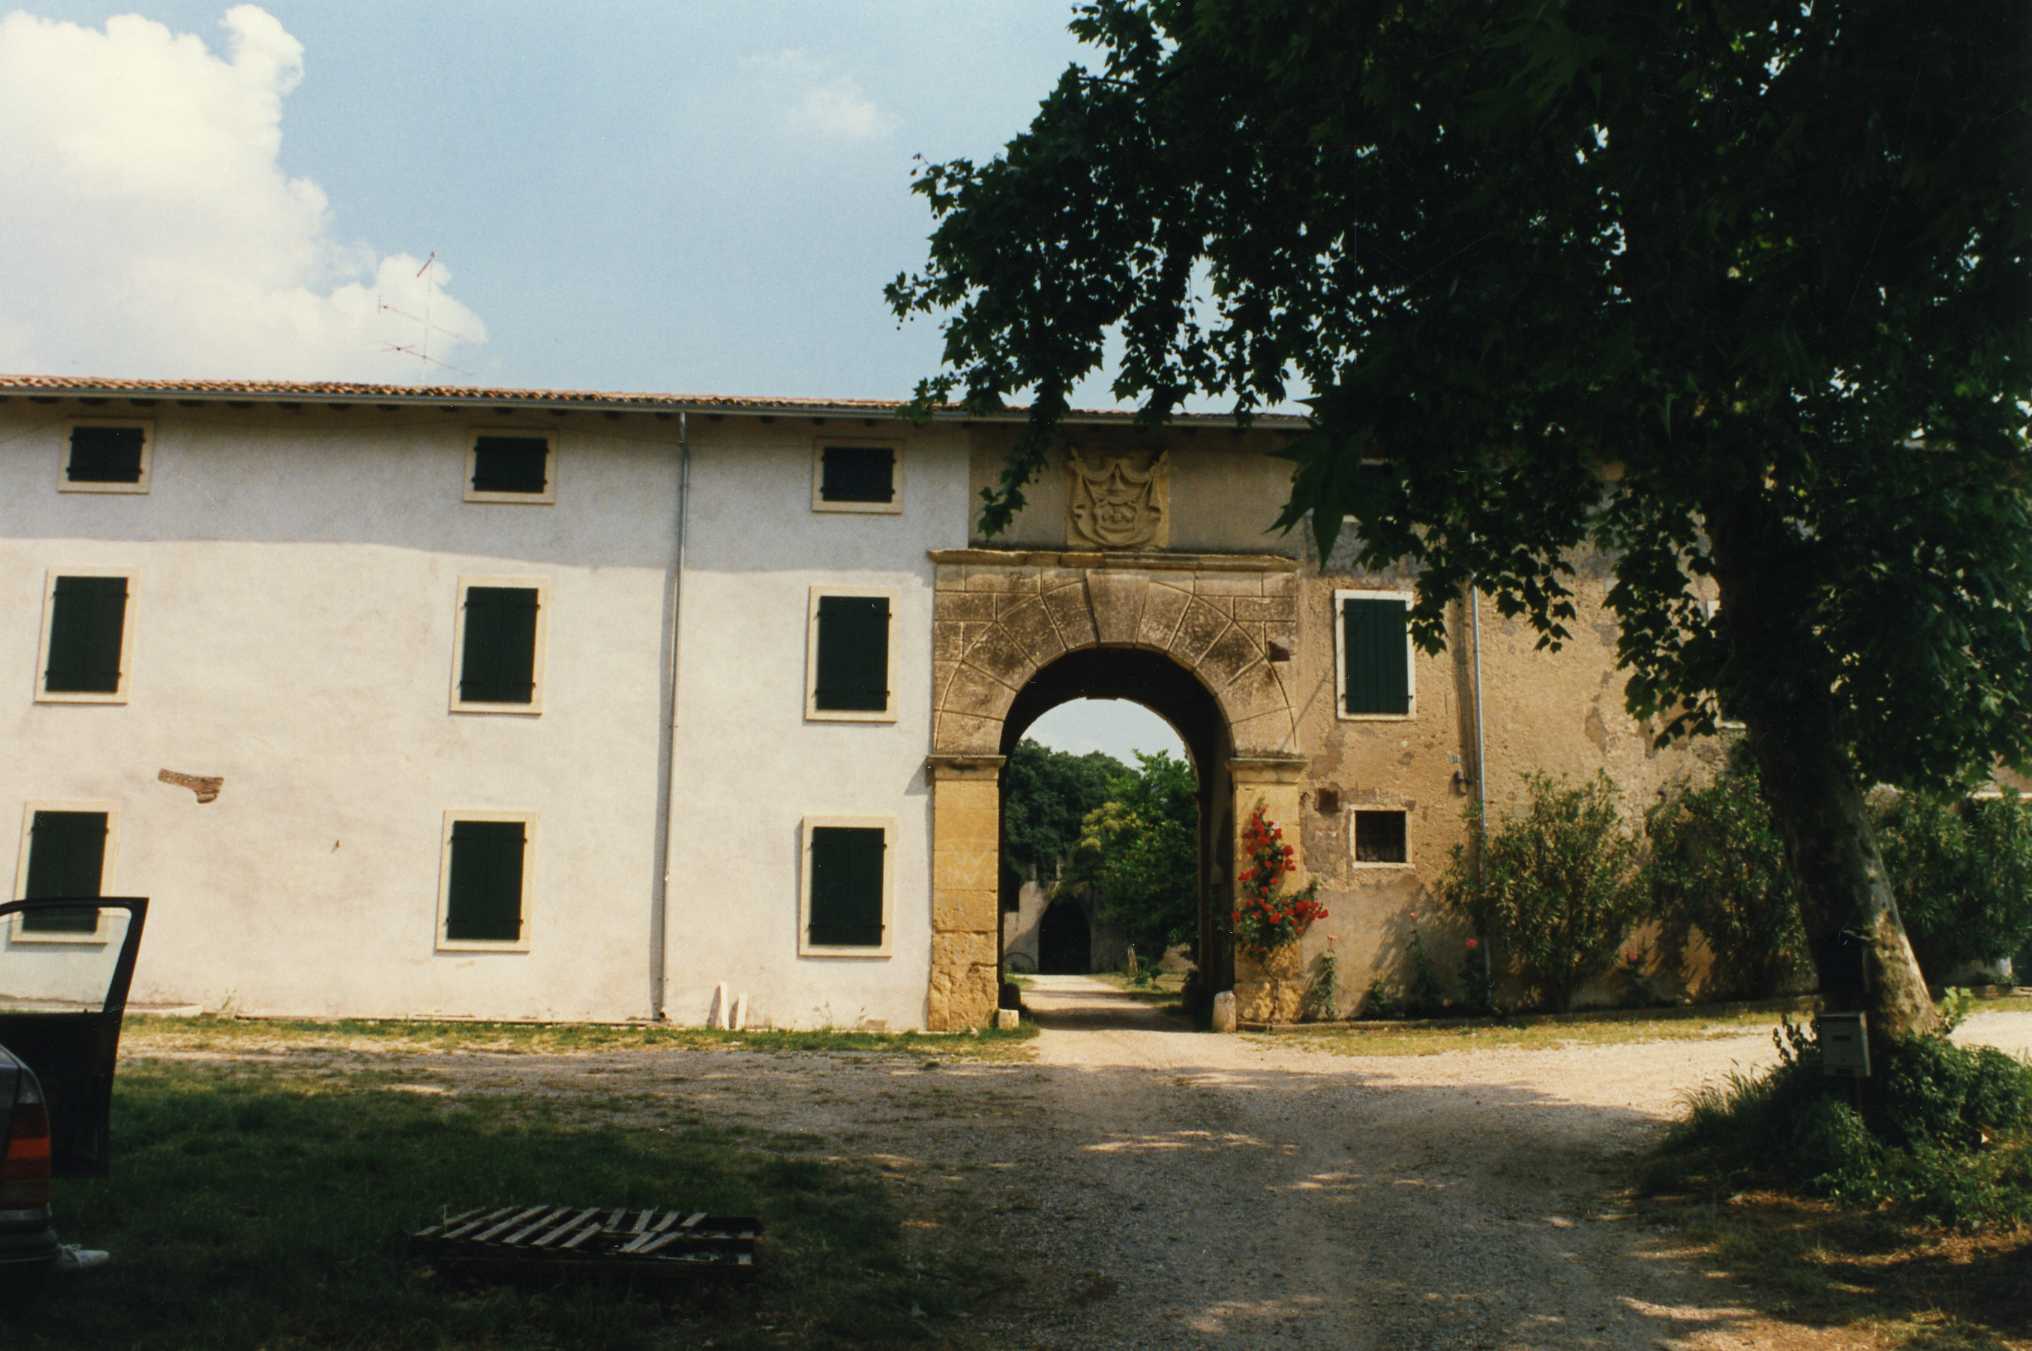 Corte Valcerea (casale, corte rurale con residenza signorile) - Castelnuovo del Garda (VR) 